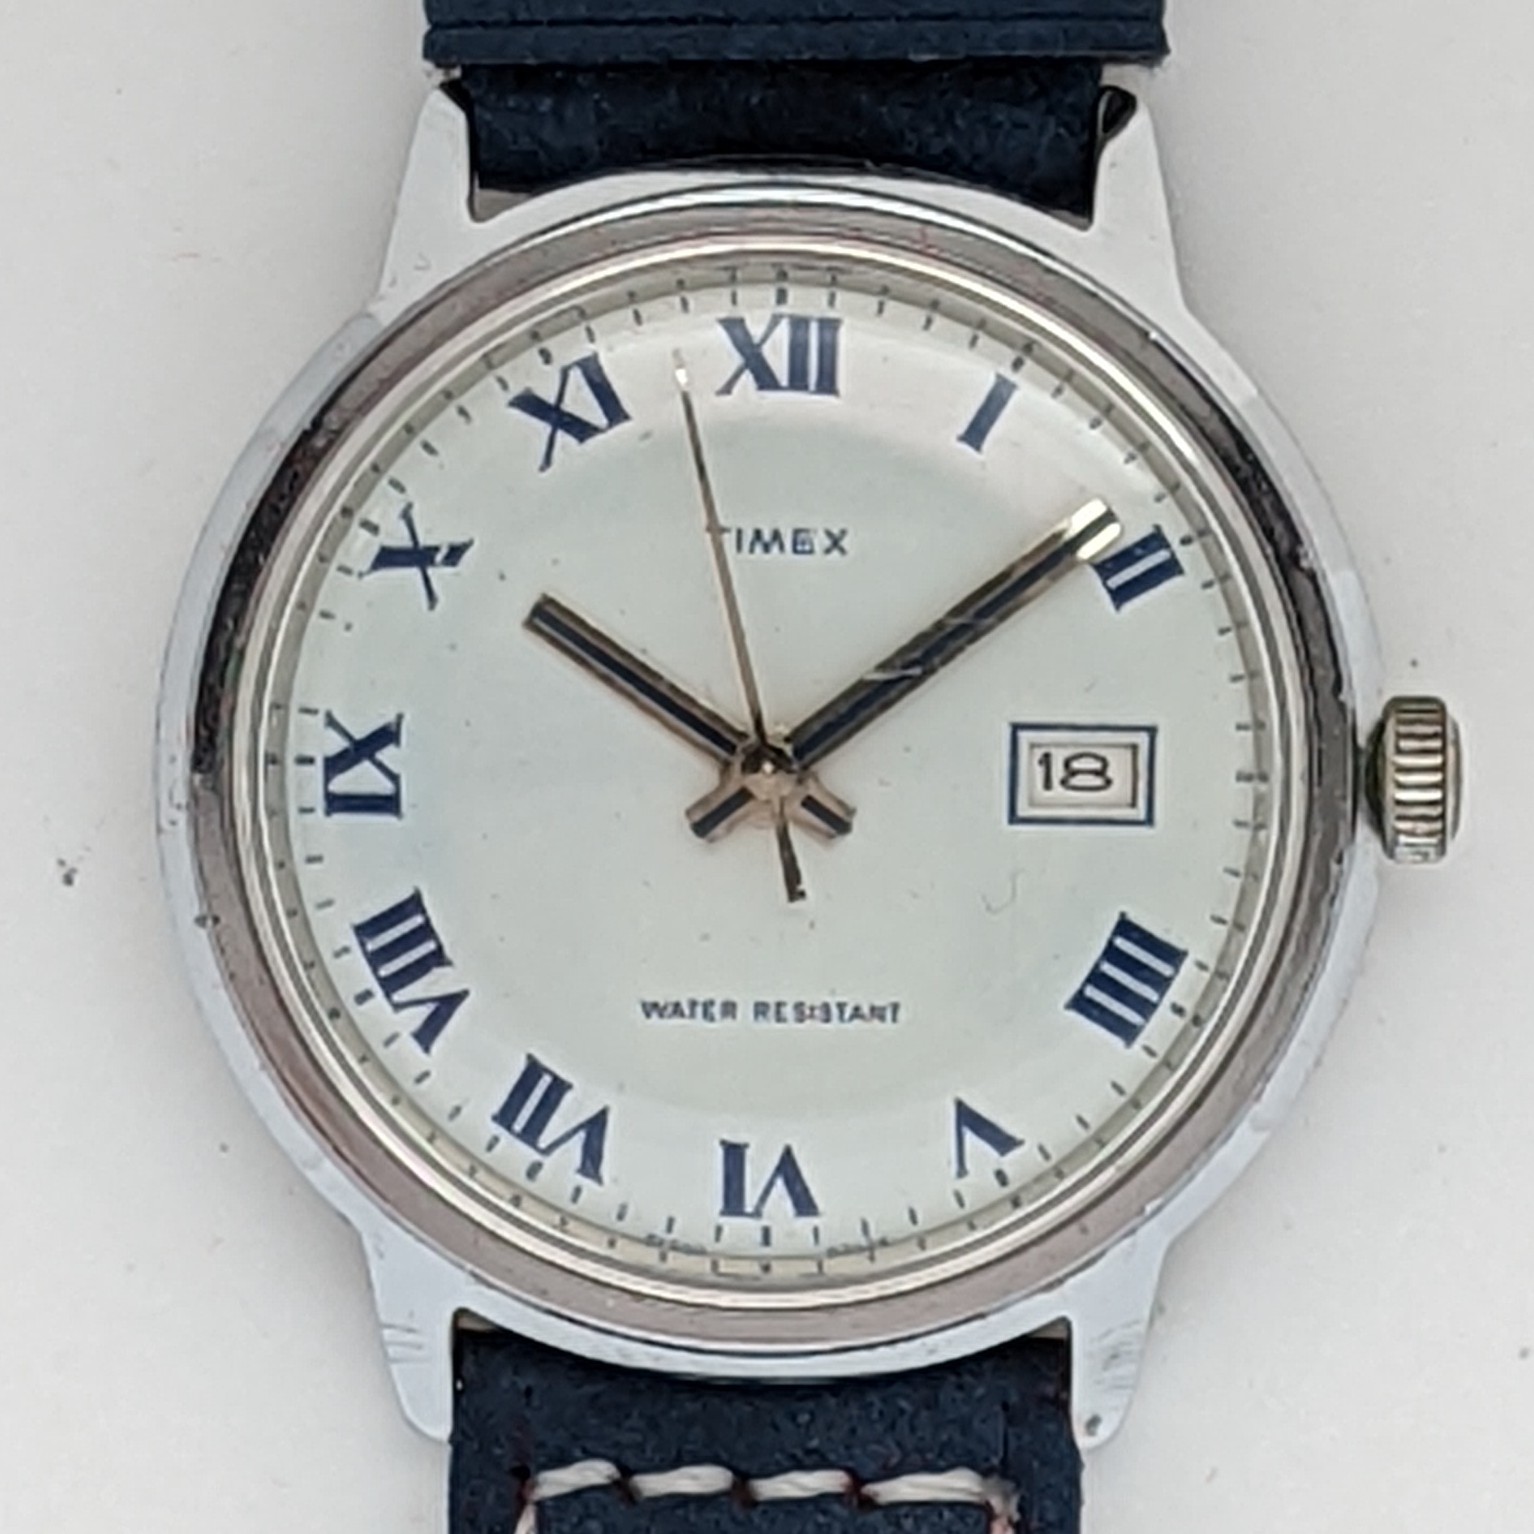 Timex Marlin 26550 02574 [1974]